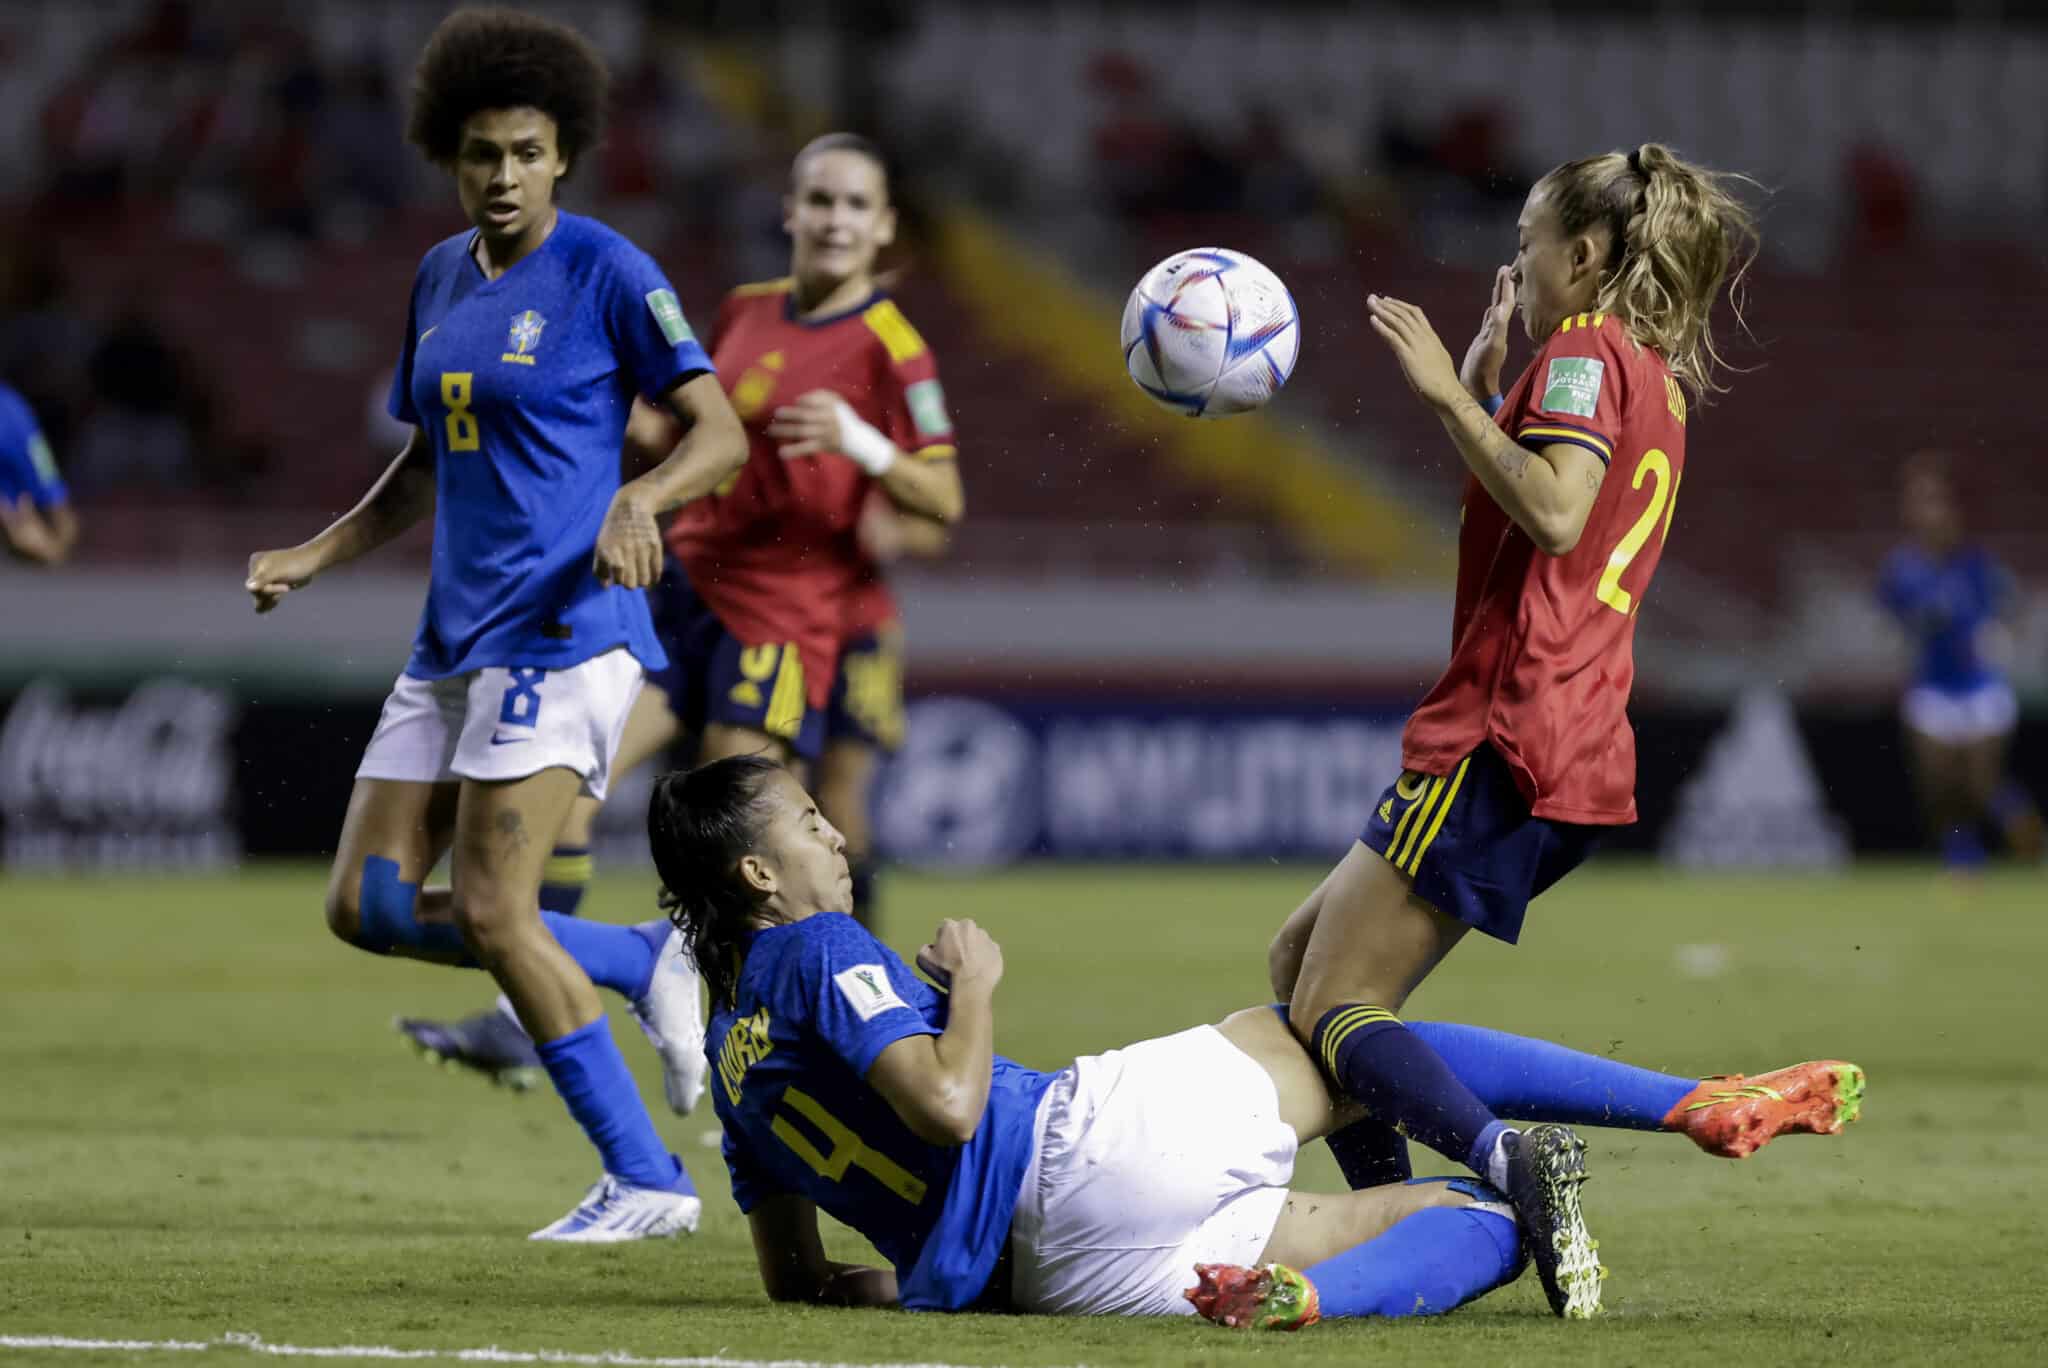 Lauren Eduarda Leal (abajo) de Brasil disputa el balón con Ascensión Martínez de España